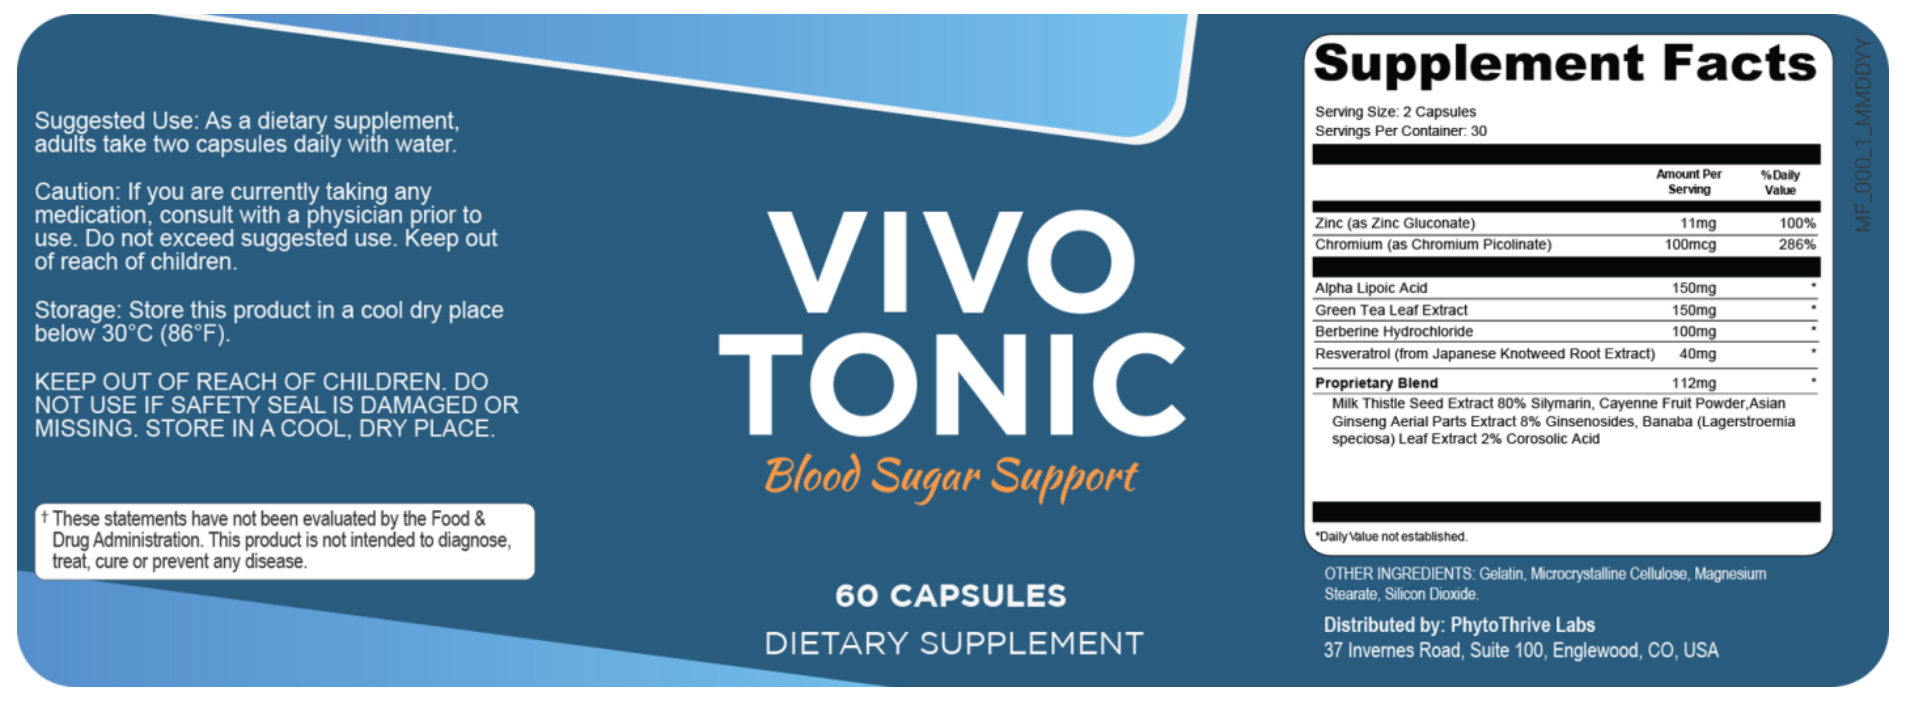 VivoTonic blood sugar supplement  Facts